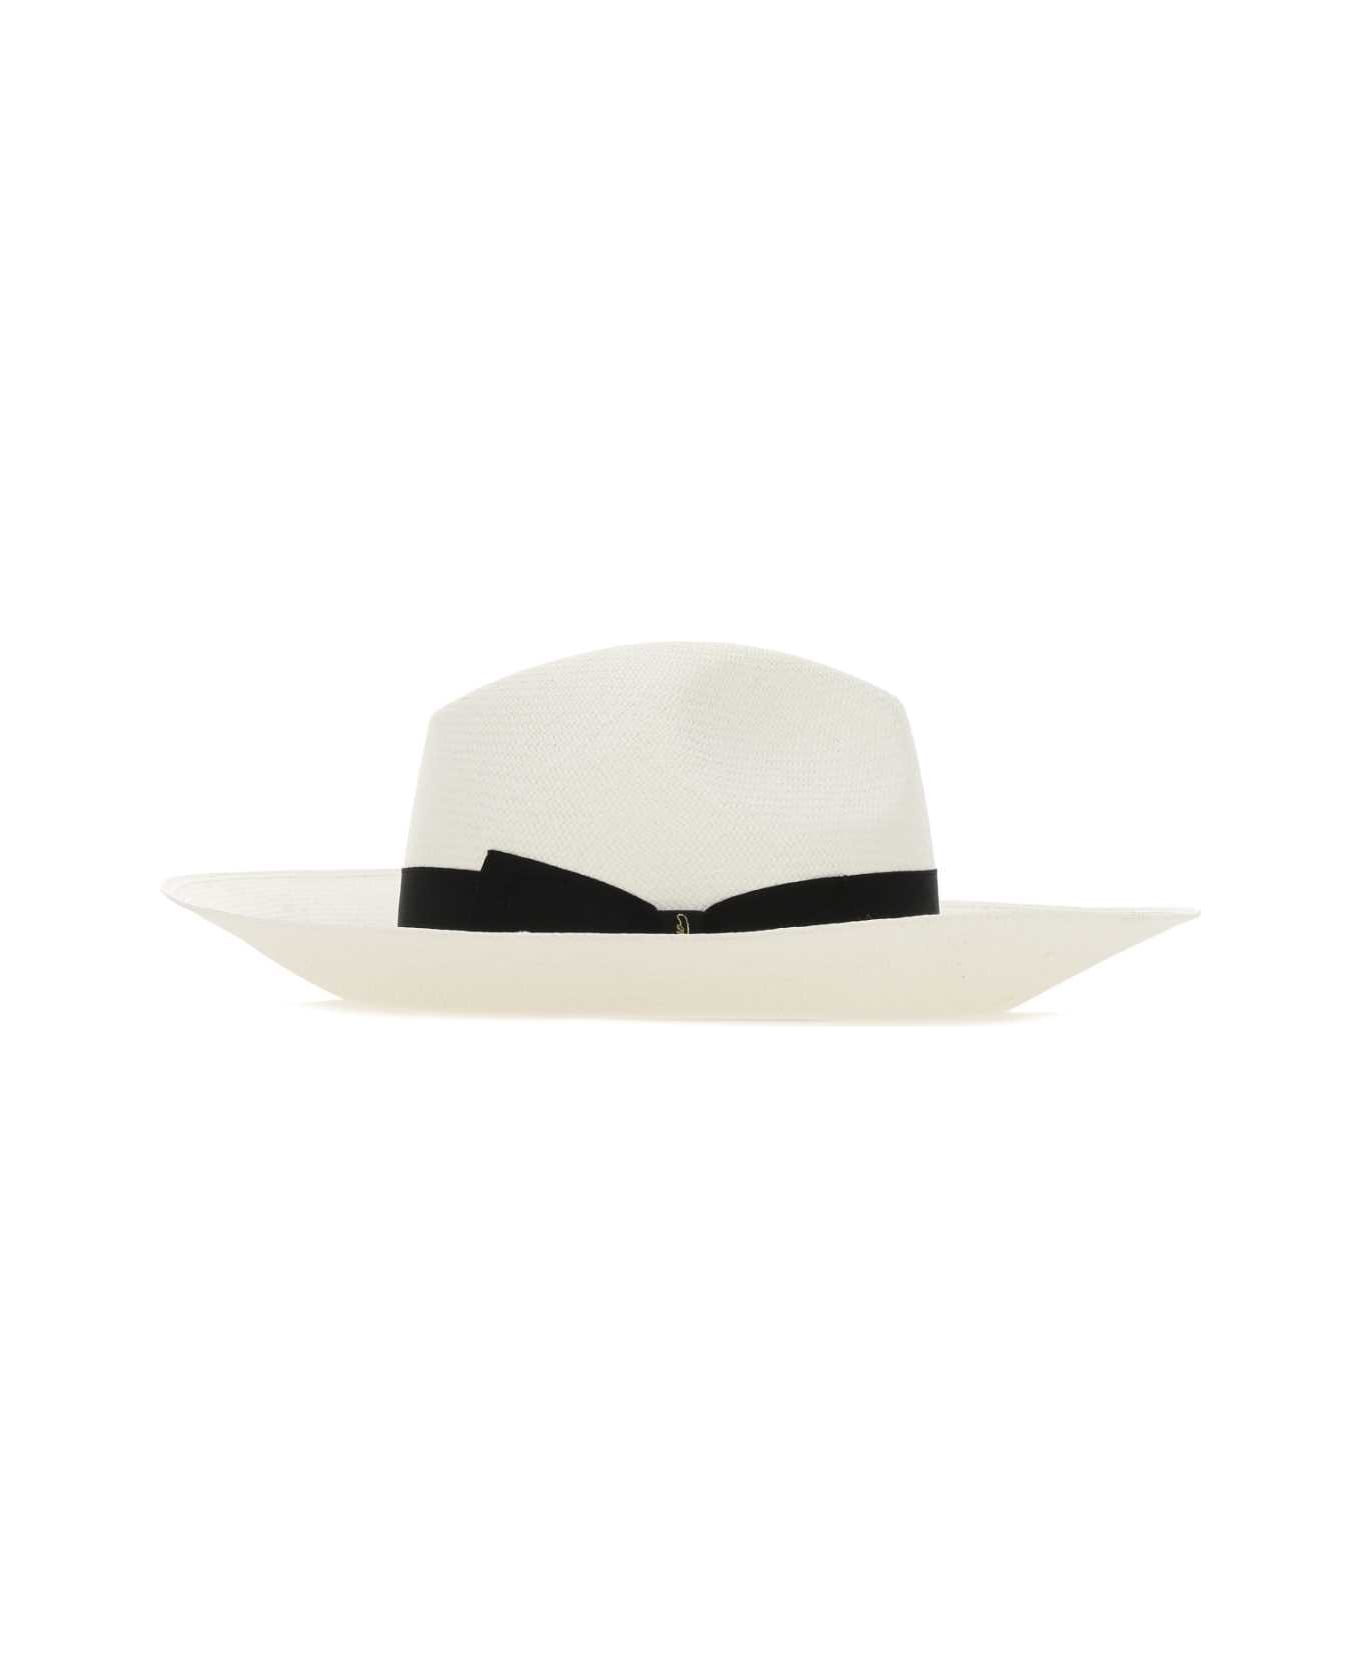 Borsalino White Straw Sophie Panama Hat - 0002